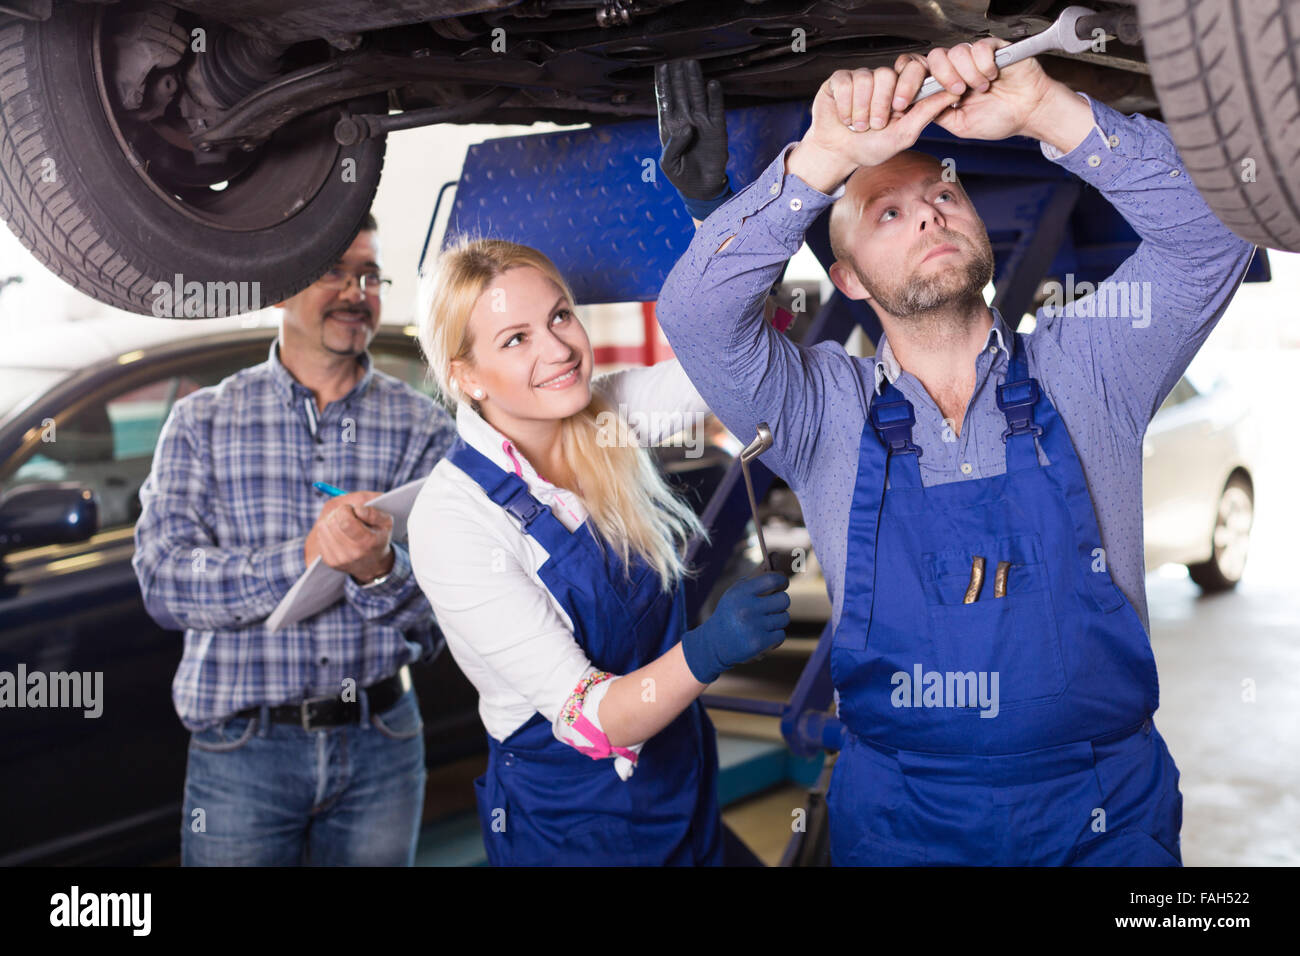 guapo-mecanico-y-ayudante-ruso-mujeres-trabajando-en-el-taller-de-reparacion-de-automoviles-fah522.jpg